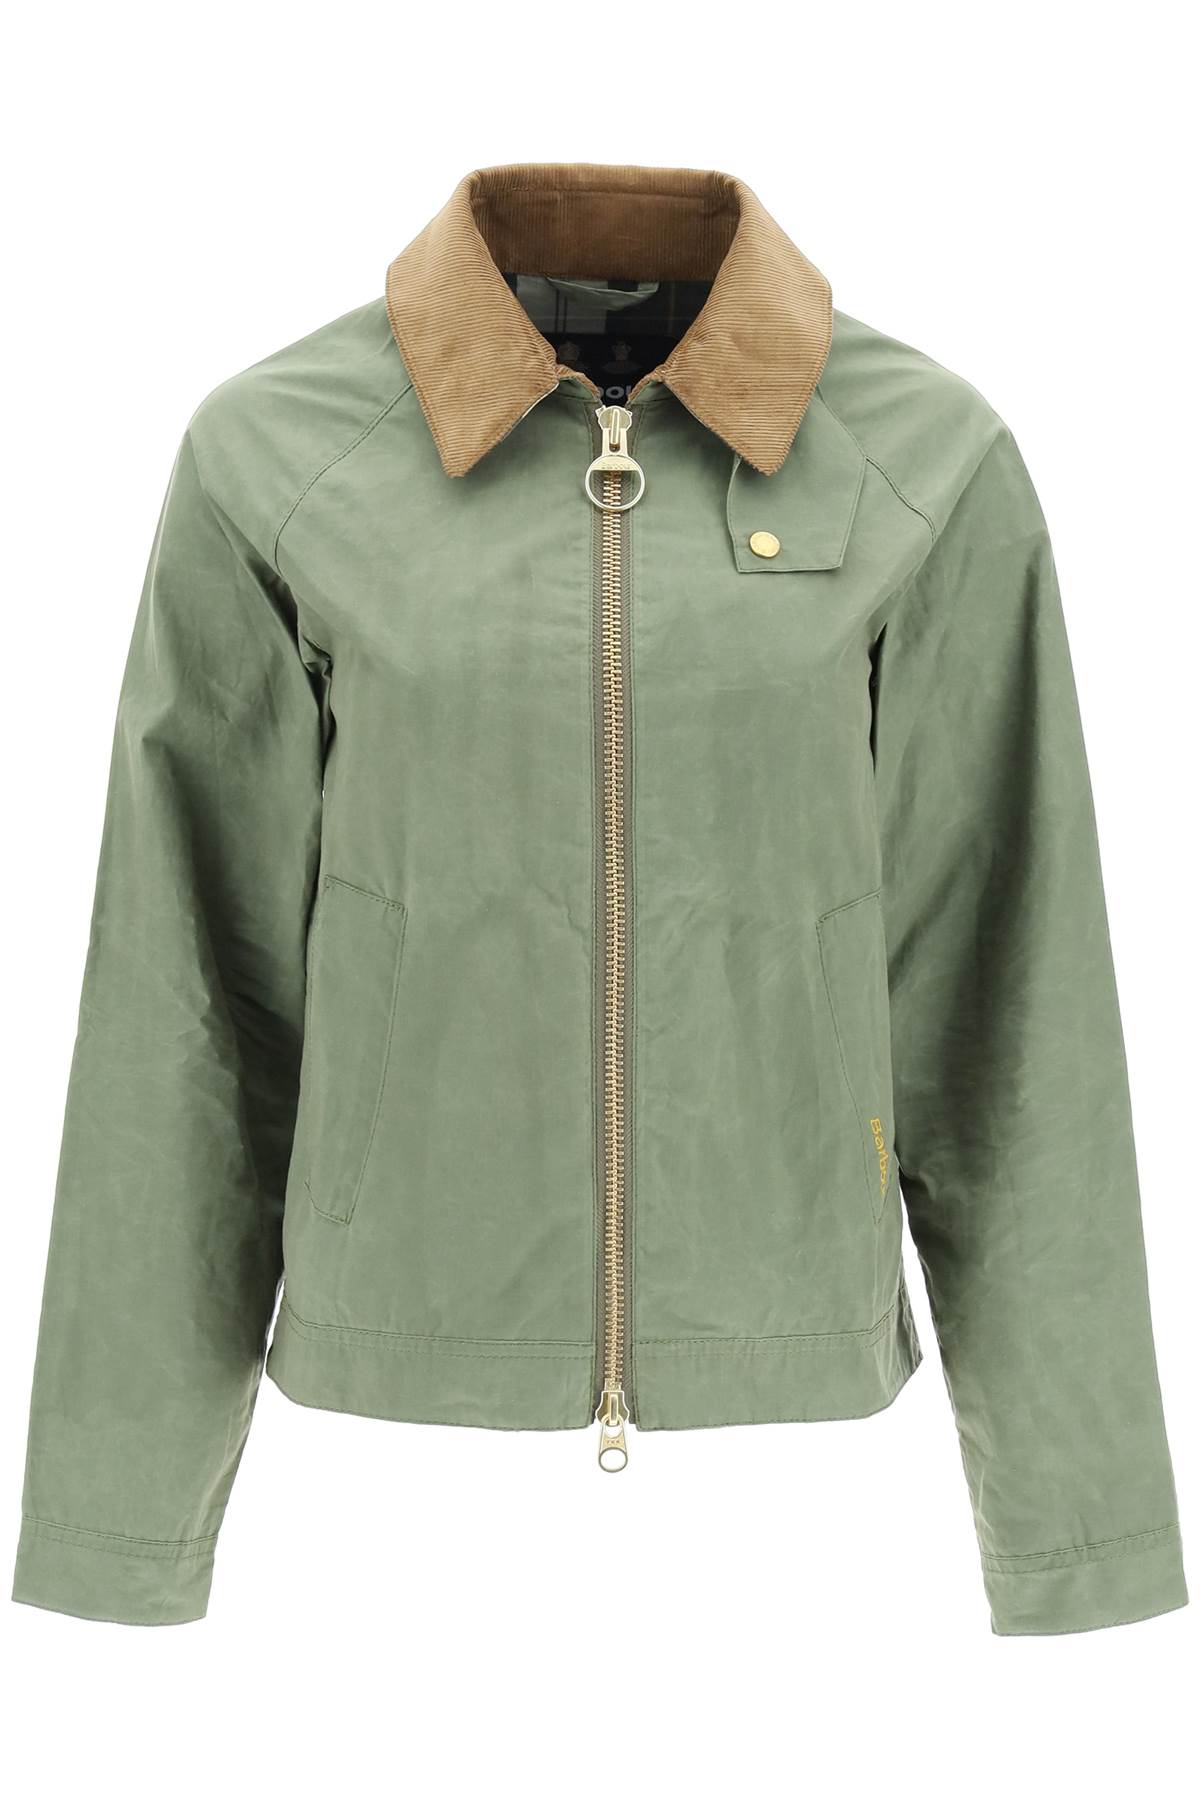 Barbour campbell vintage overshirt jacket-0